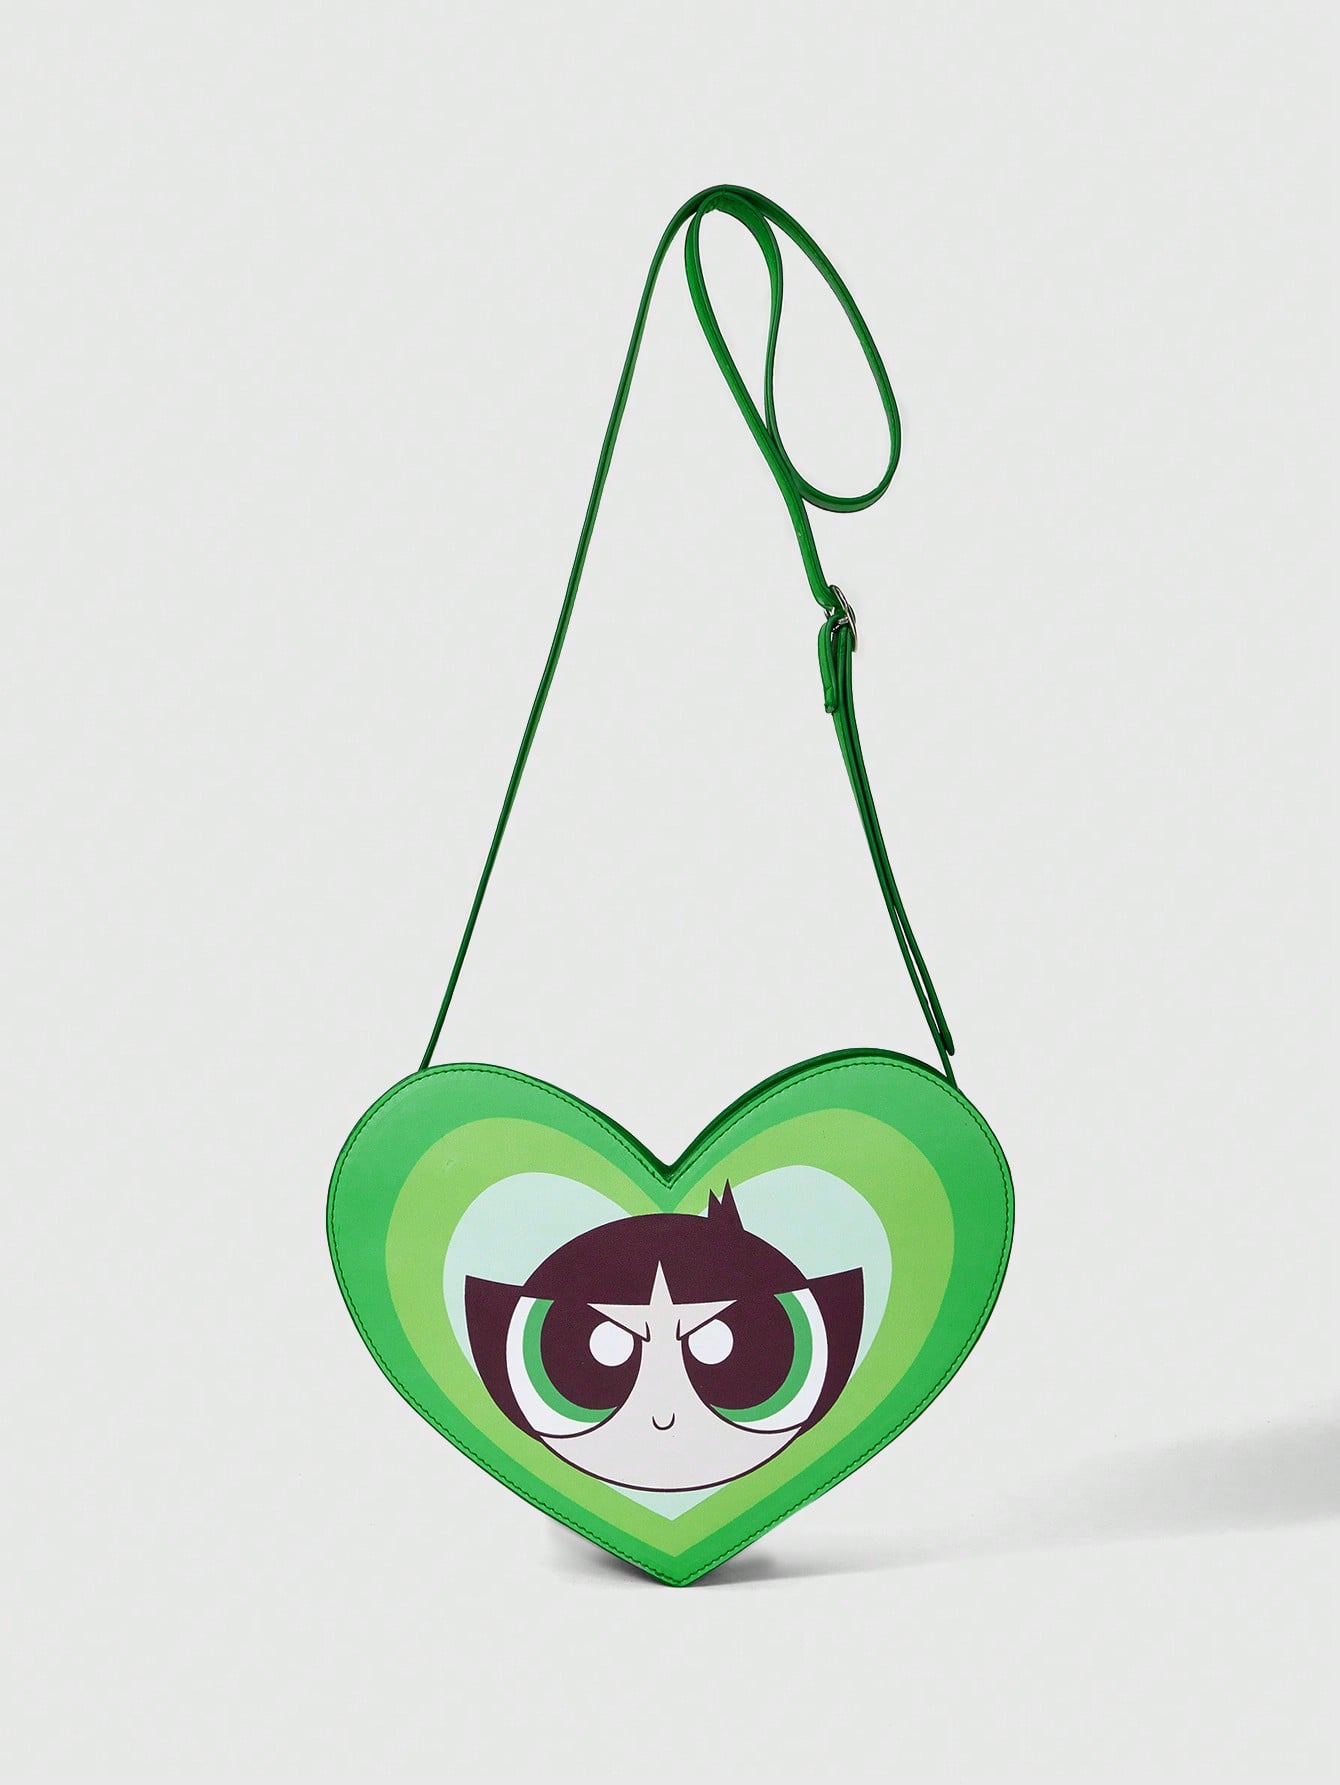 цена Крутые девчонки | Новинка ROMWE с мультяшным графическим дизайном в виде сердца, зеленый